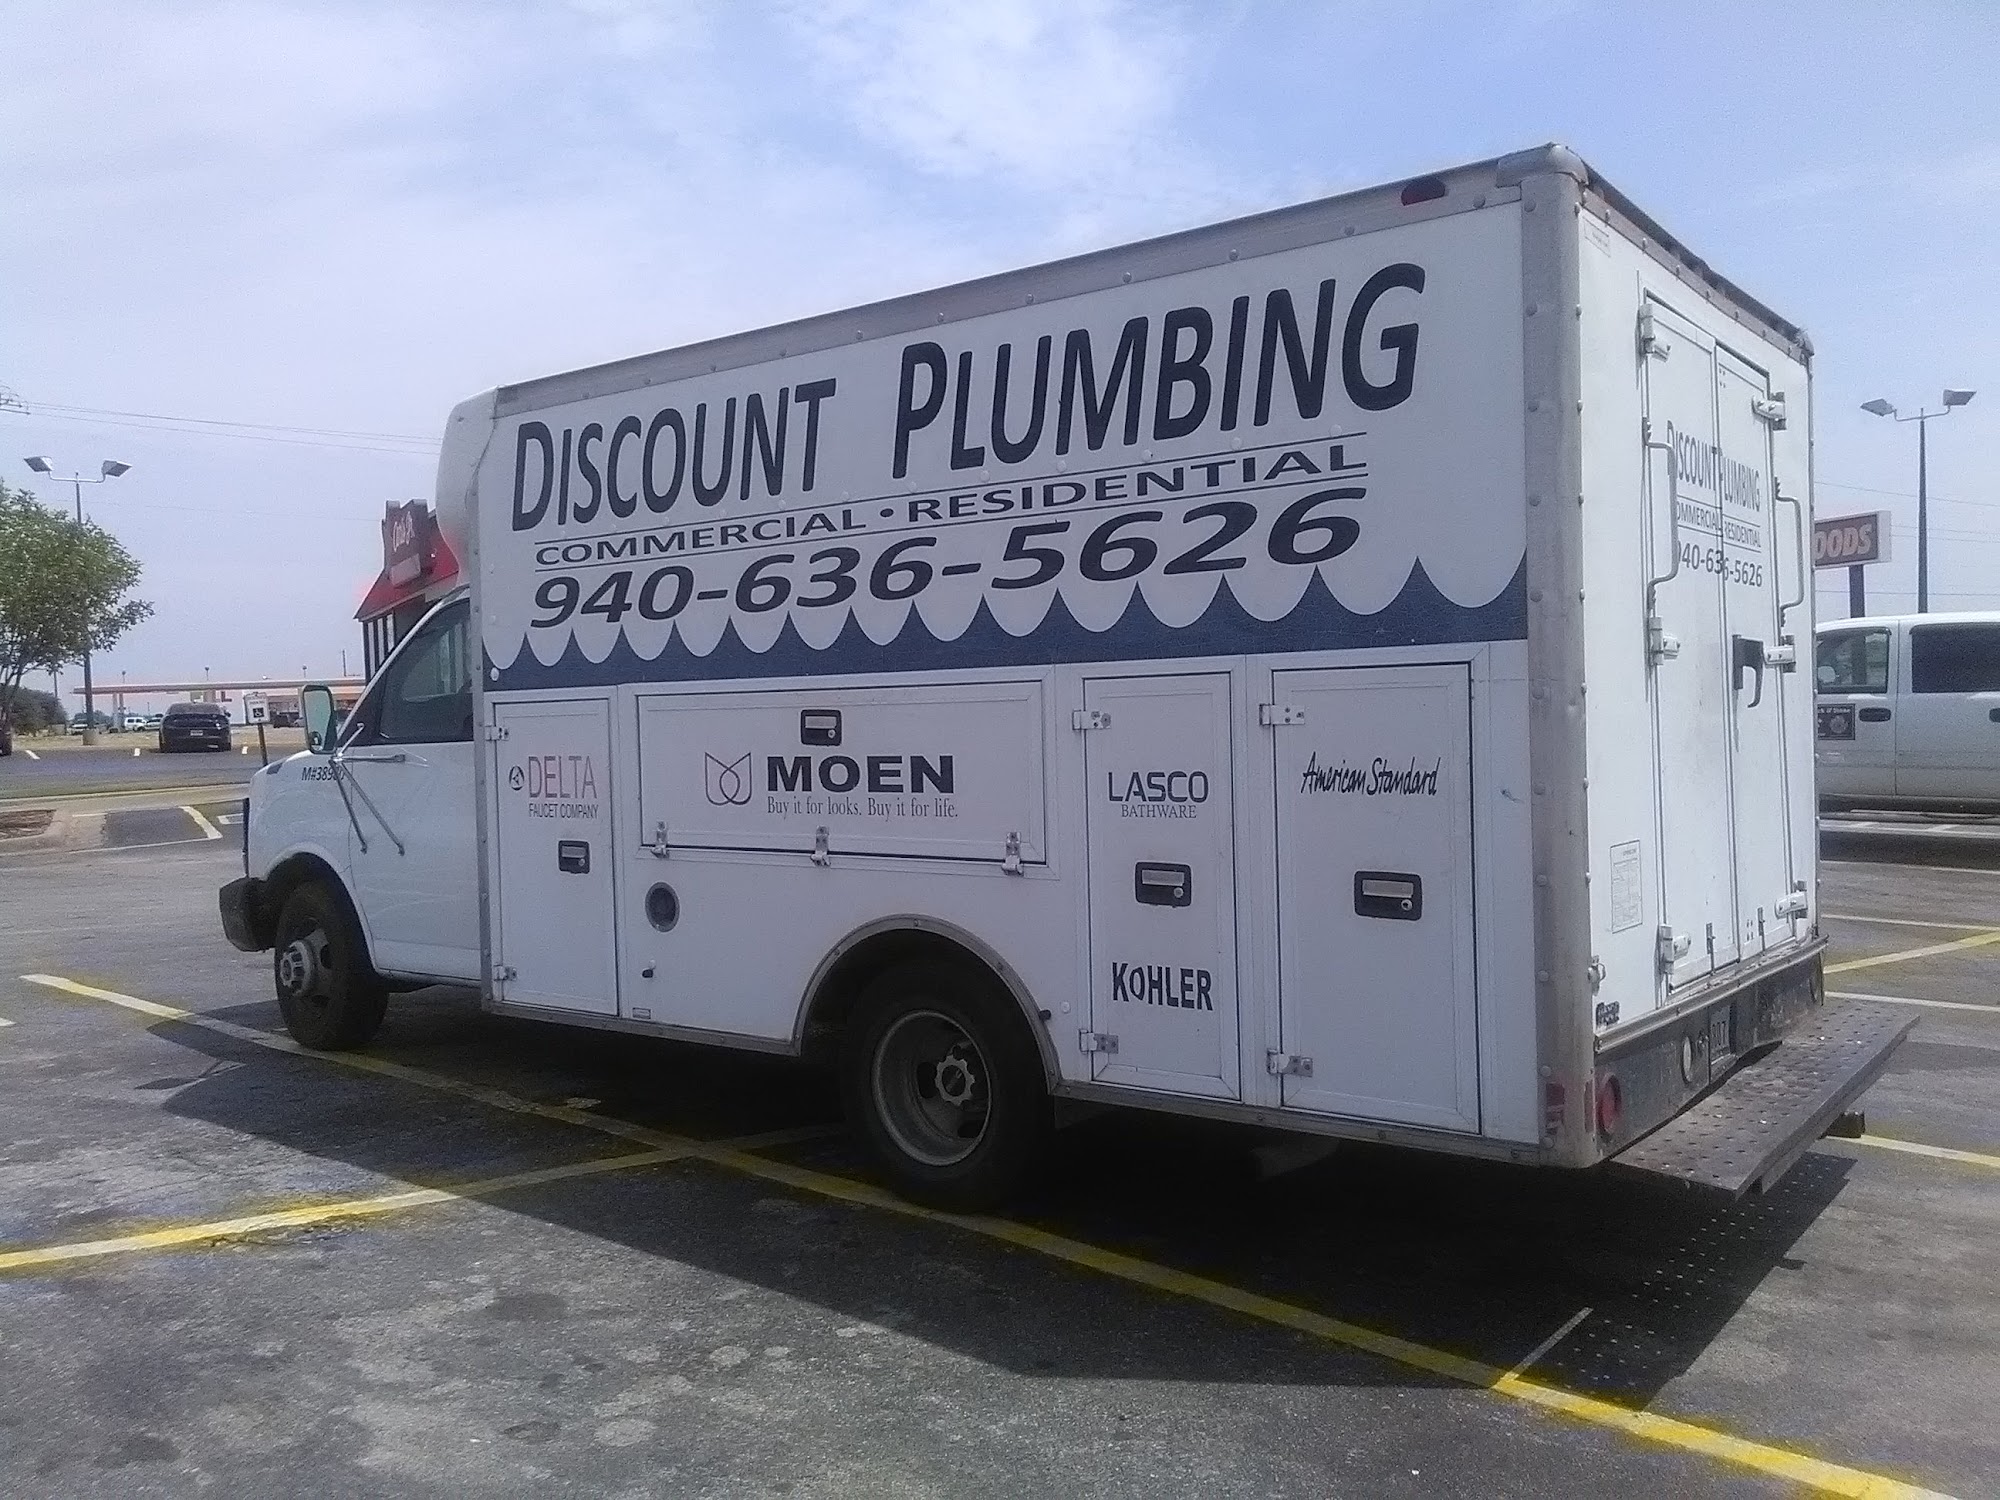 Discount Plumbing